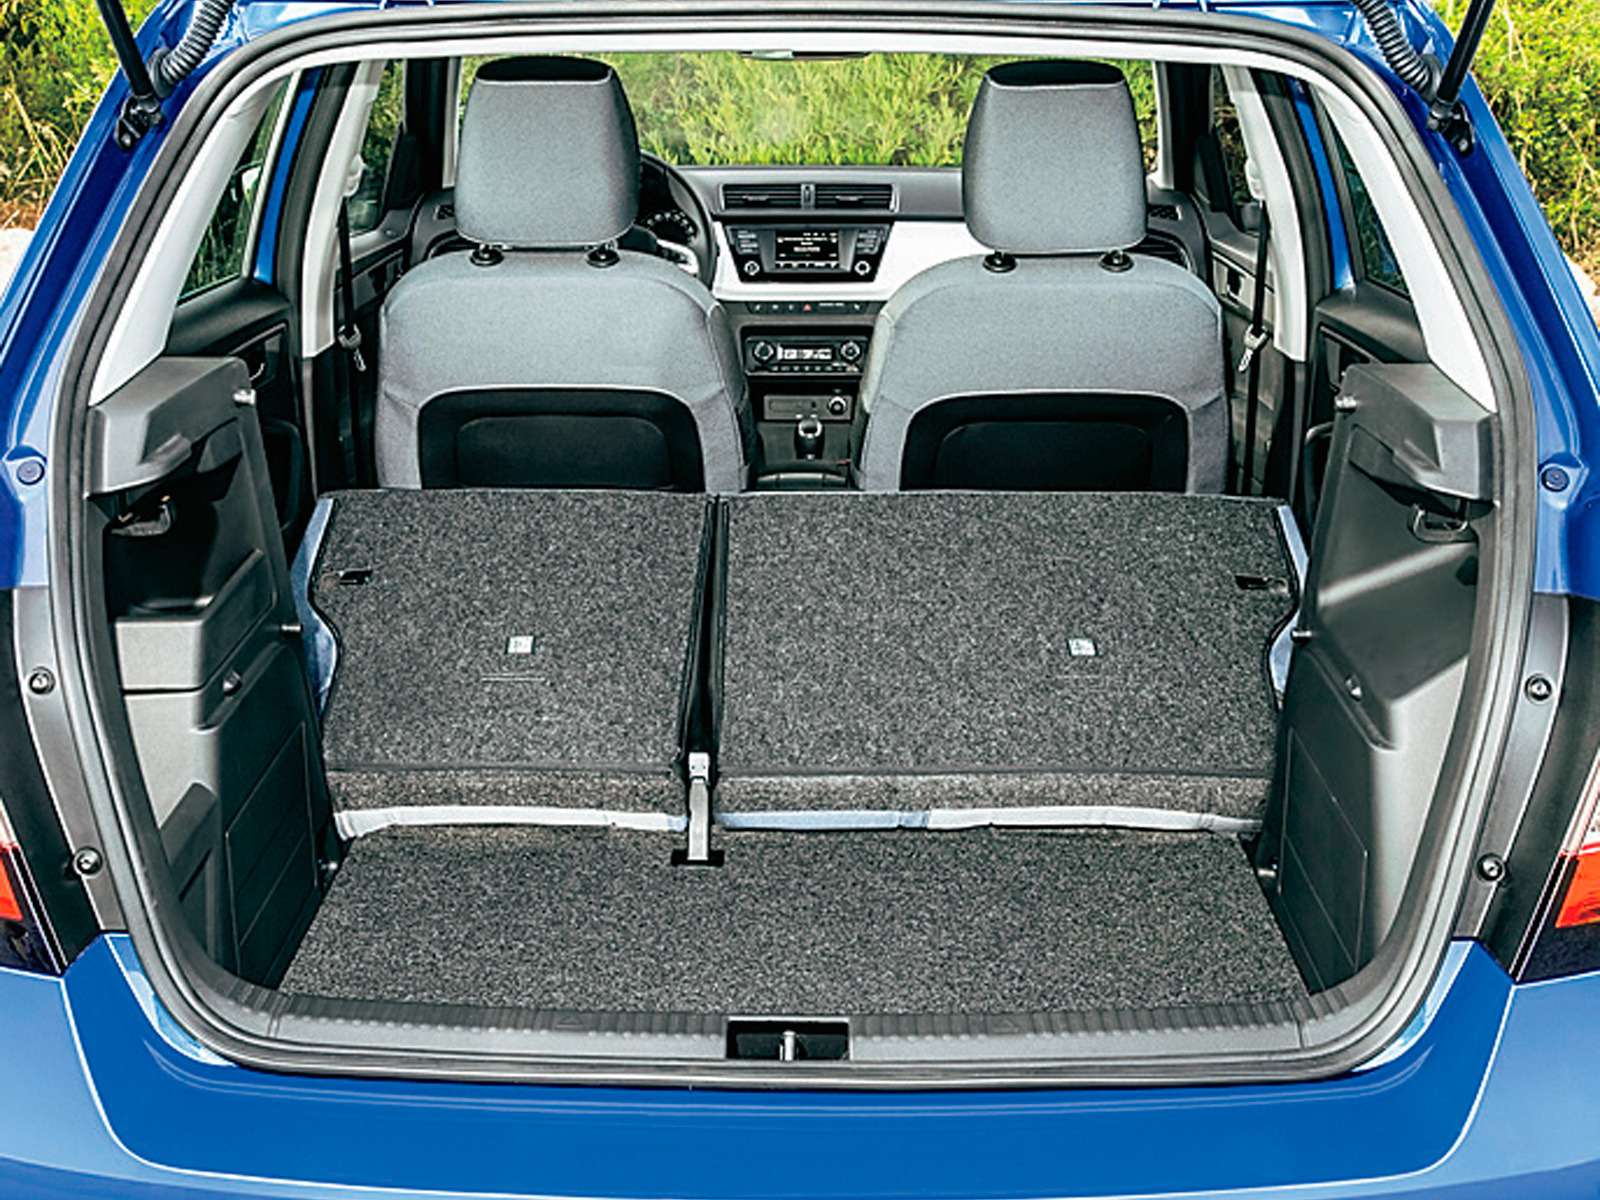 Несмотря на уменьшение длины автомобиля, багажник Skoda Fabia  прибавил 15 л, увеличившись до 330 л. При сложенном заднем сиденье объем грузового отсека достигает 1150 л.